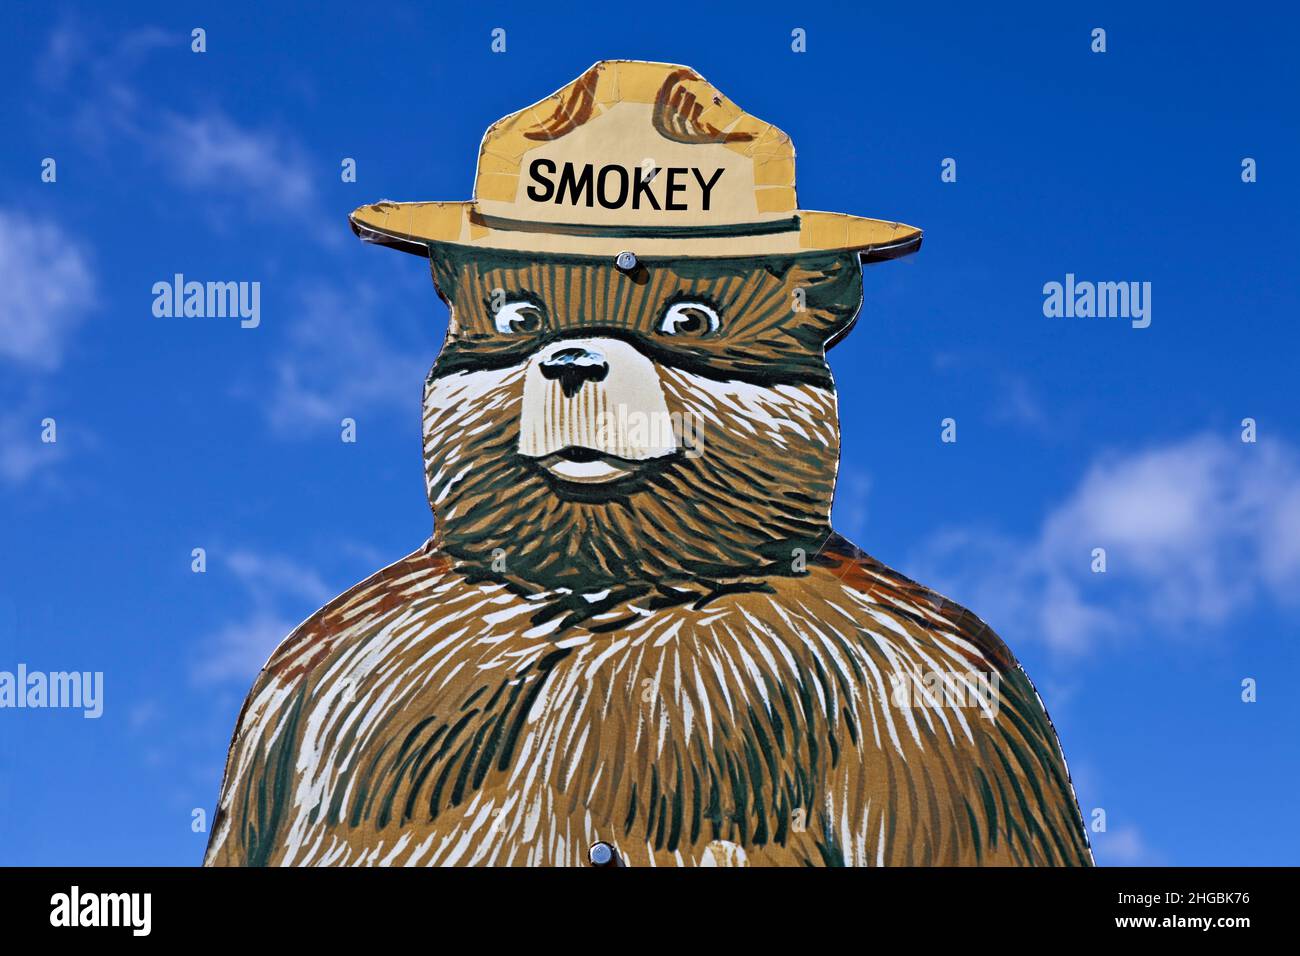 Smokey El signo de prevención de incendios en el bosque del Oso educa a los niños en la prevención de incendios silvestres el 12 de abril de 2012 en Santa Fe, Nuevo México, Estados Unidos. Foto de stock